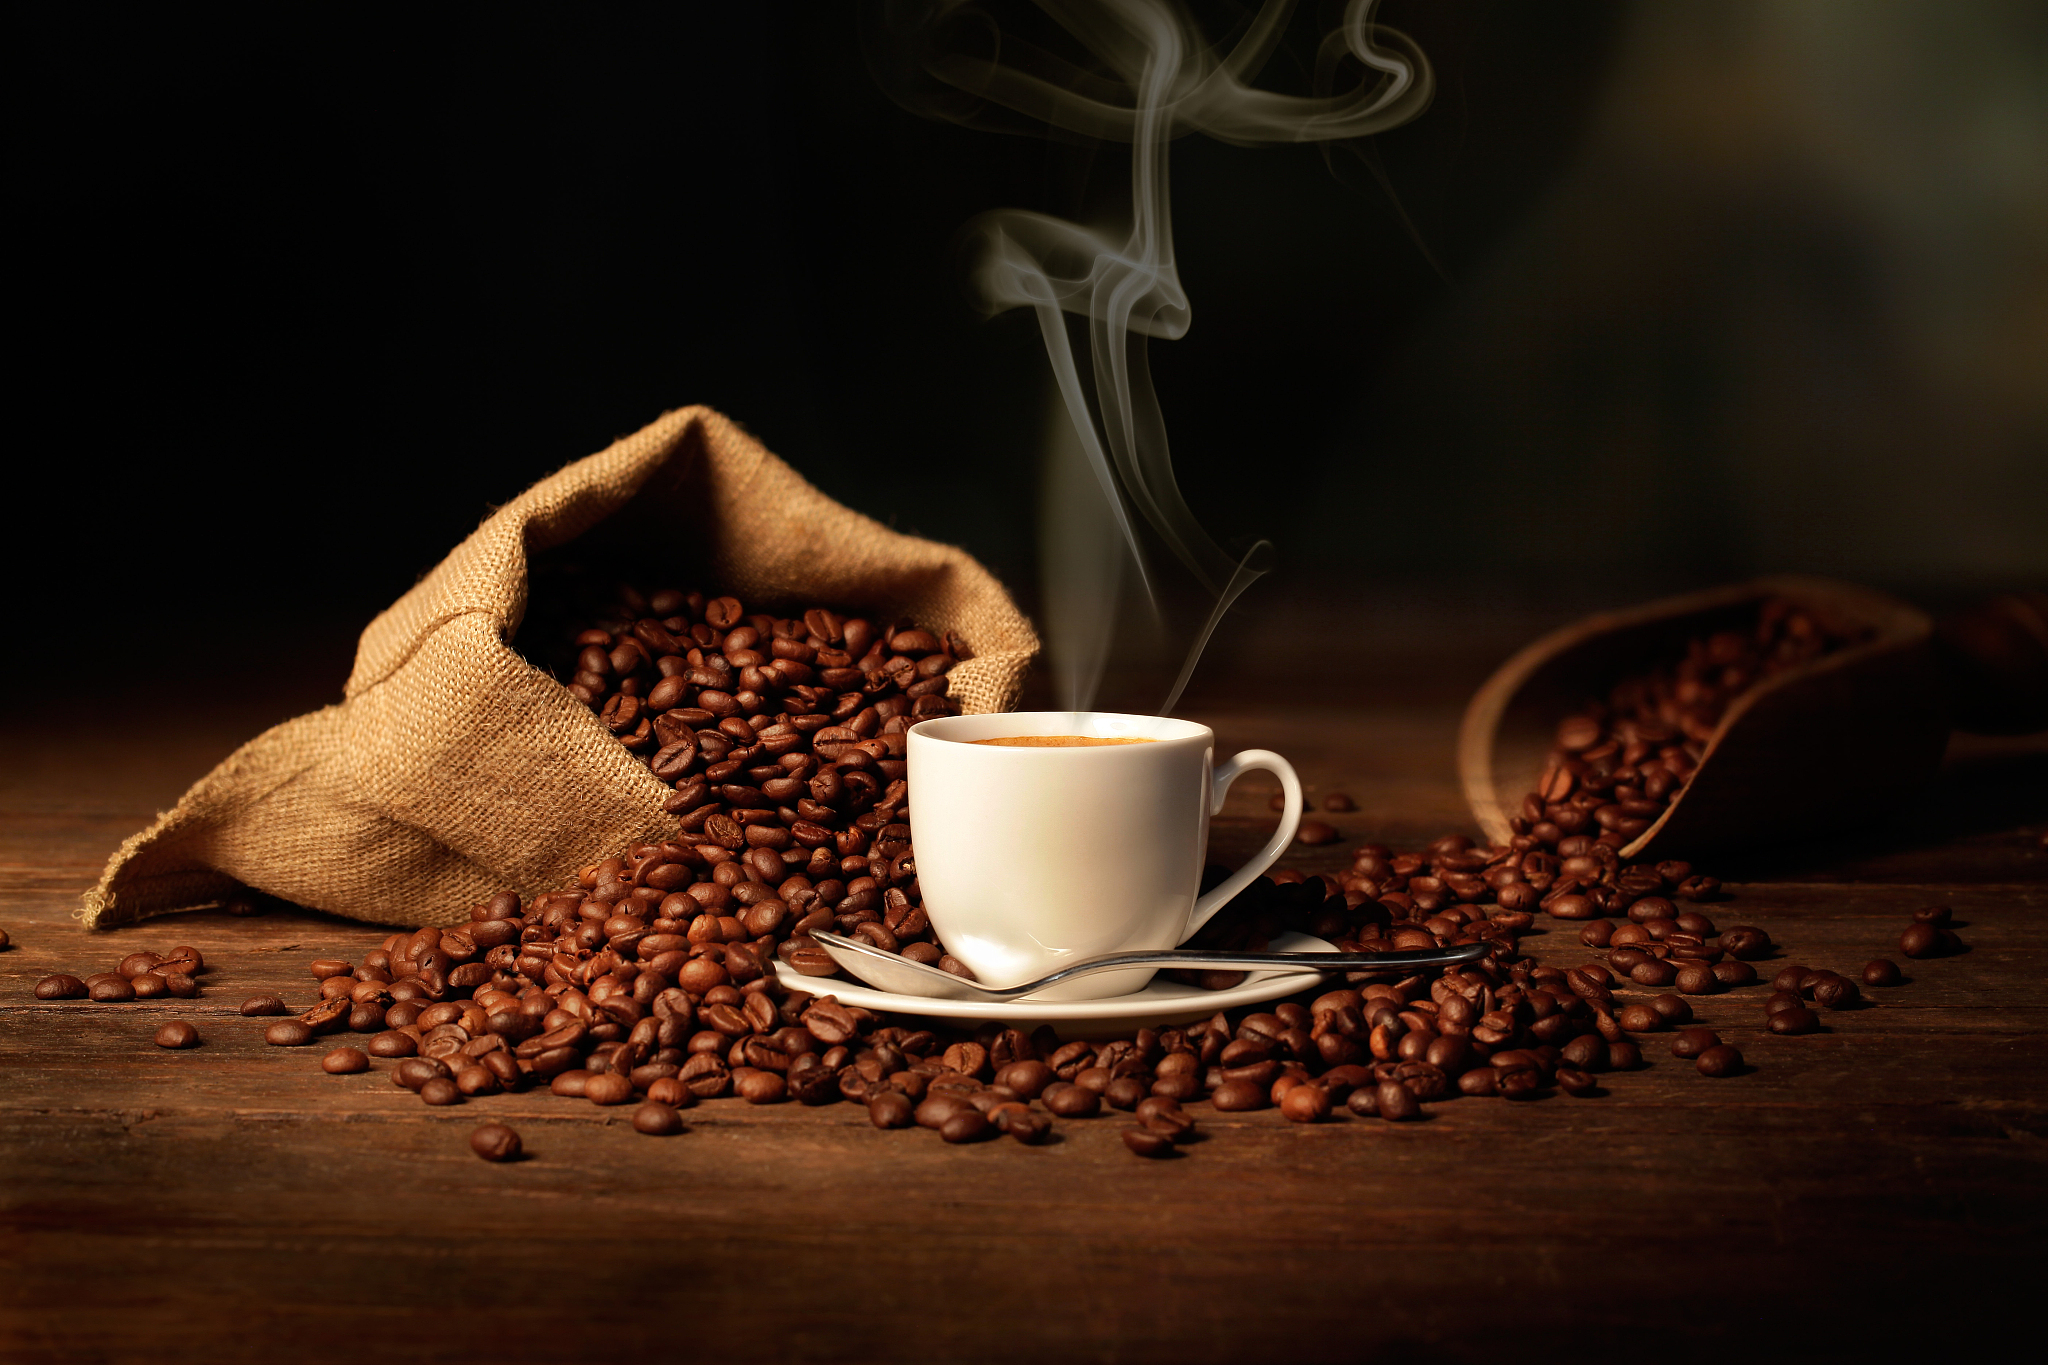 咖啡可加速燃烧卡路里提高代谢率 但喝多也会耐受